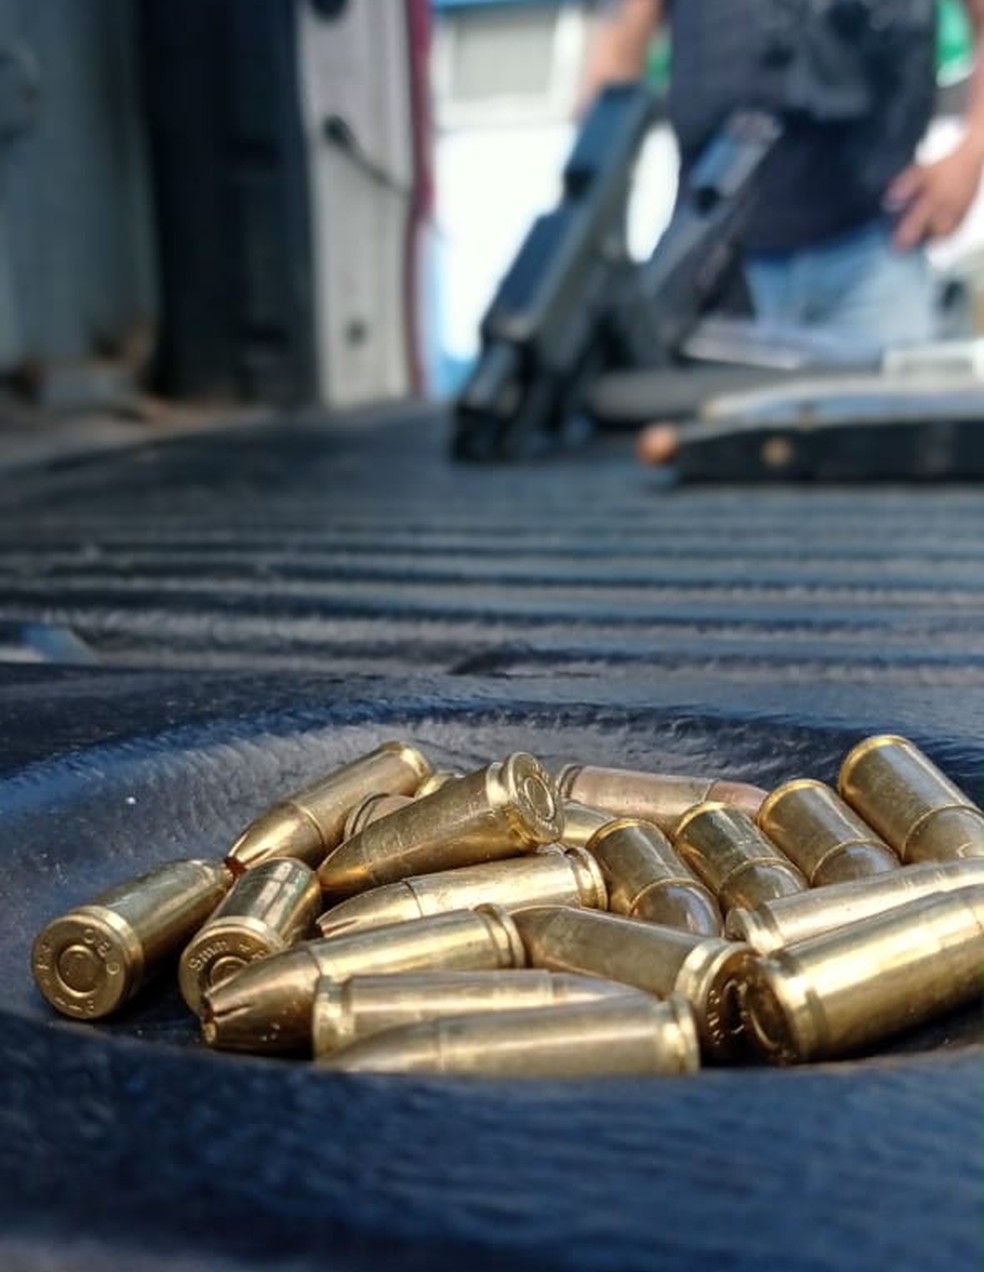 Armas e munições foram apreendidas em operação em Petrópolis — Foto: Divulgação/PM